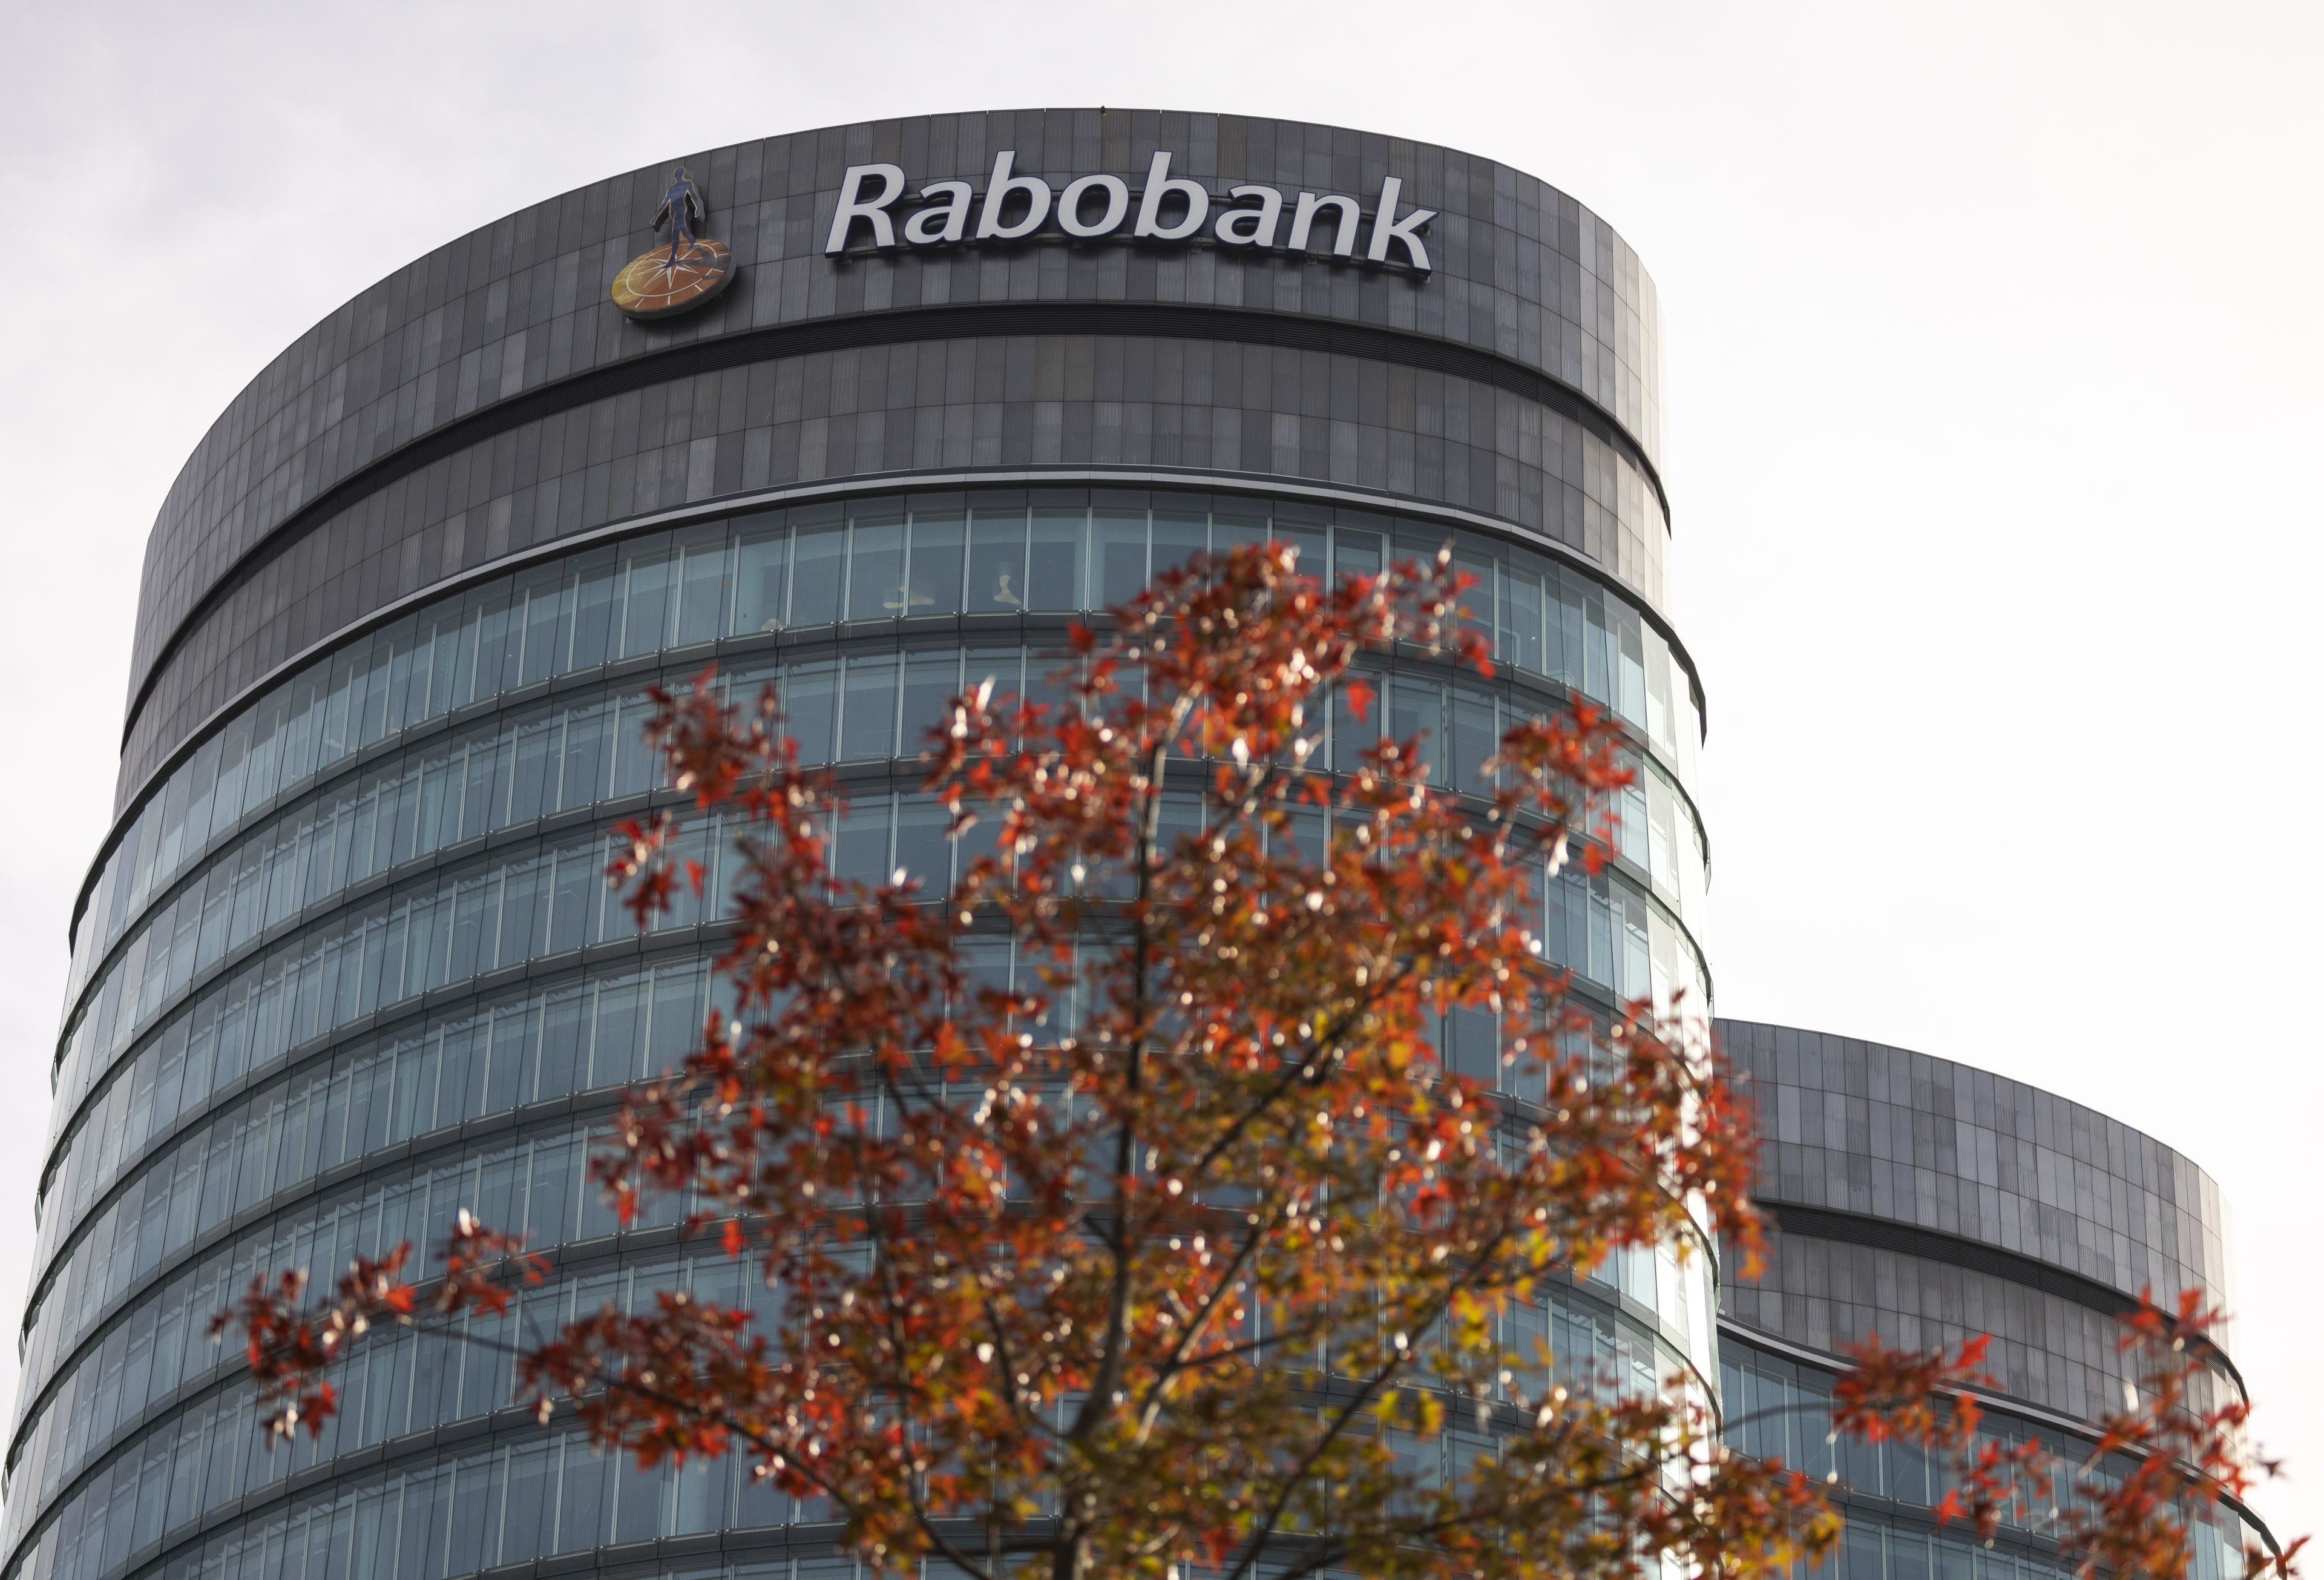 Rabobank verdachte in witwasonderzoek van Openbaar Ministerie